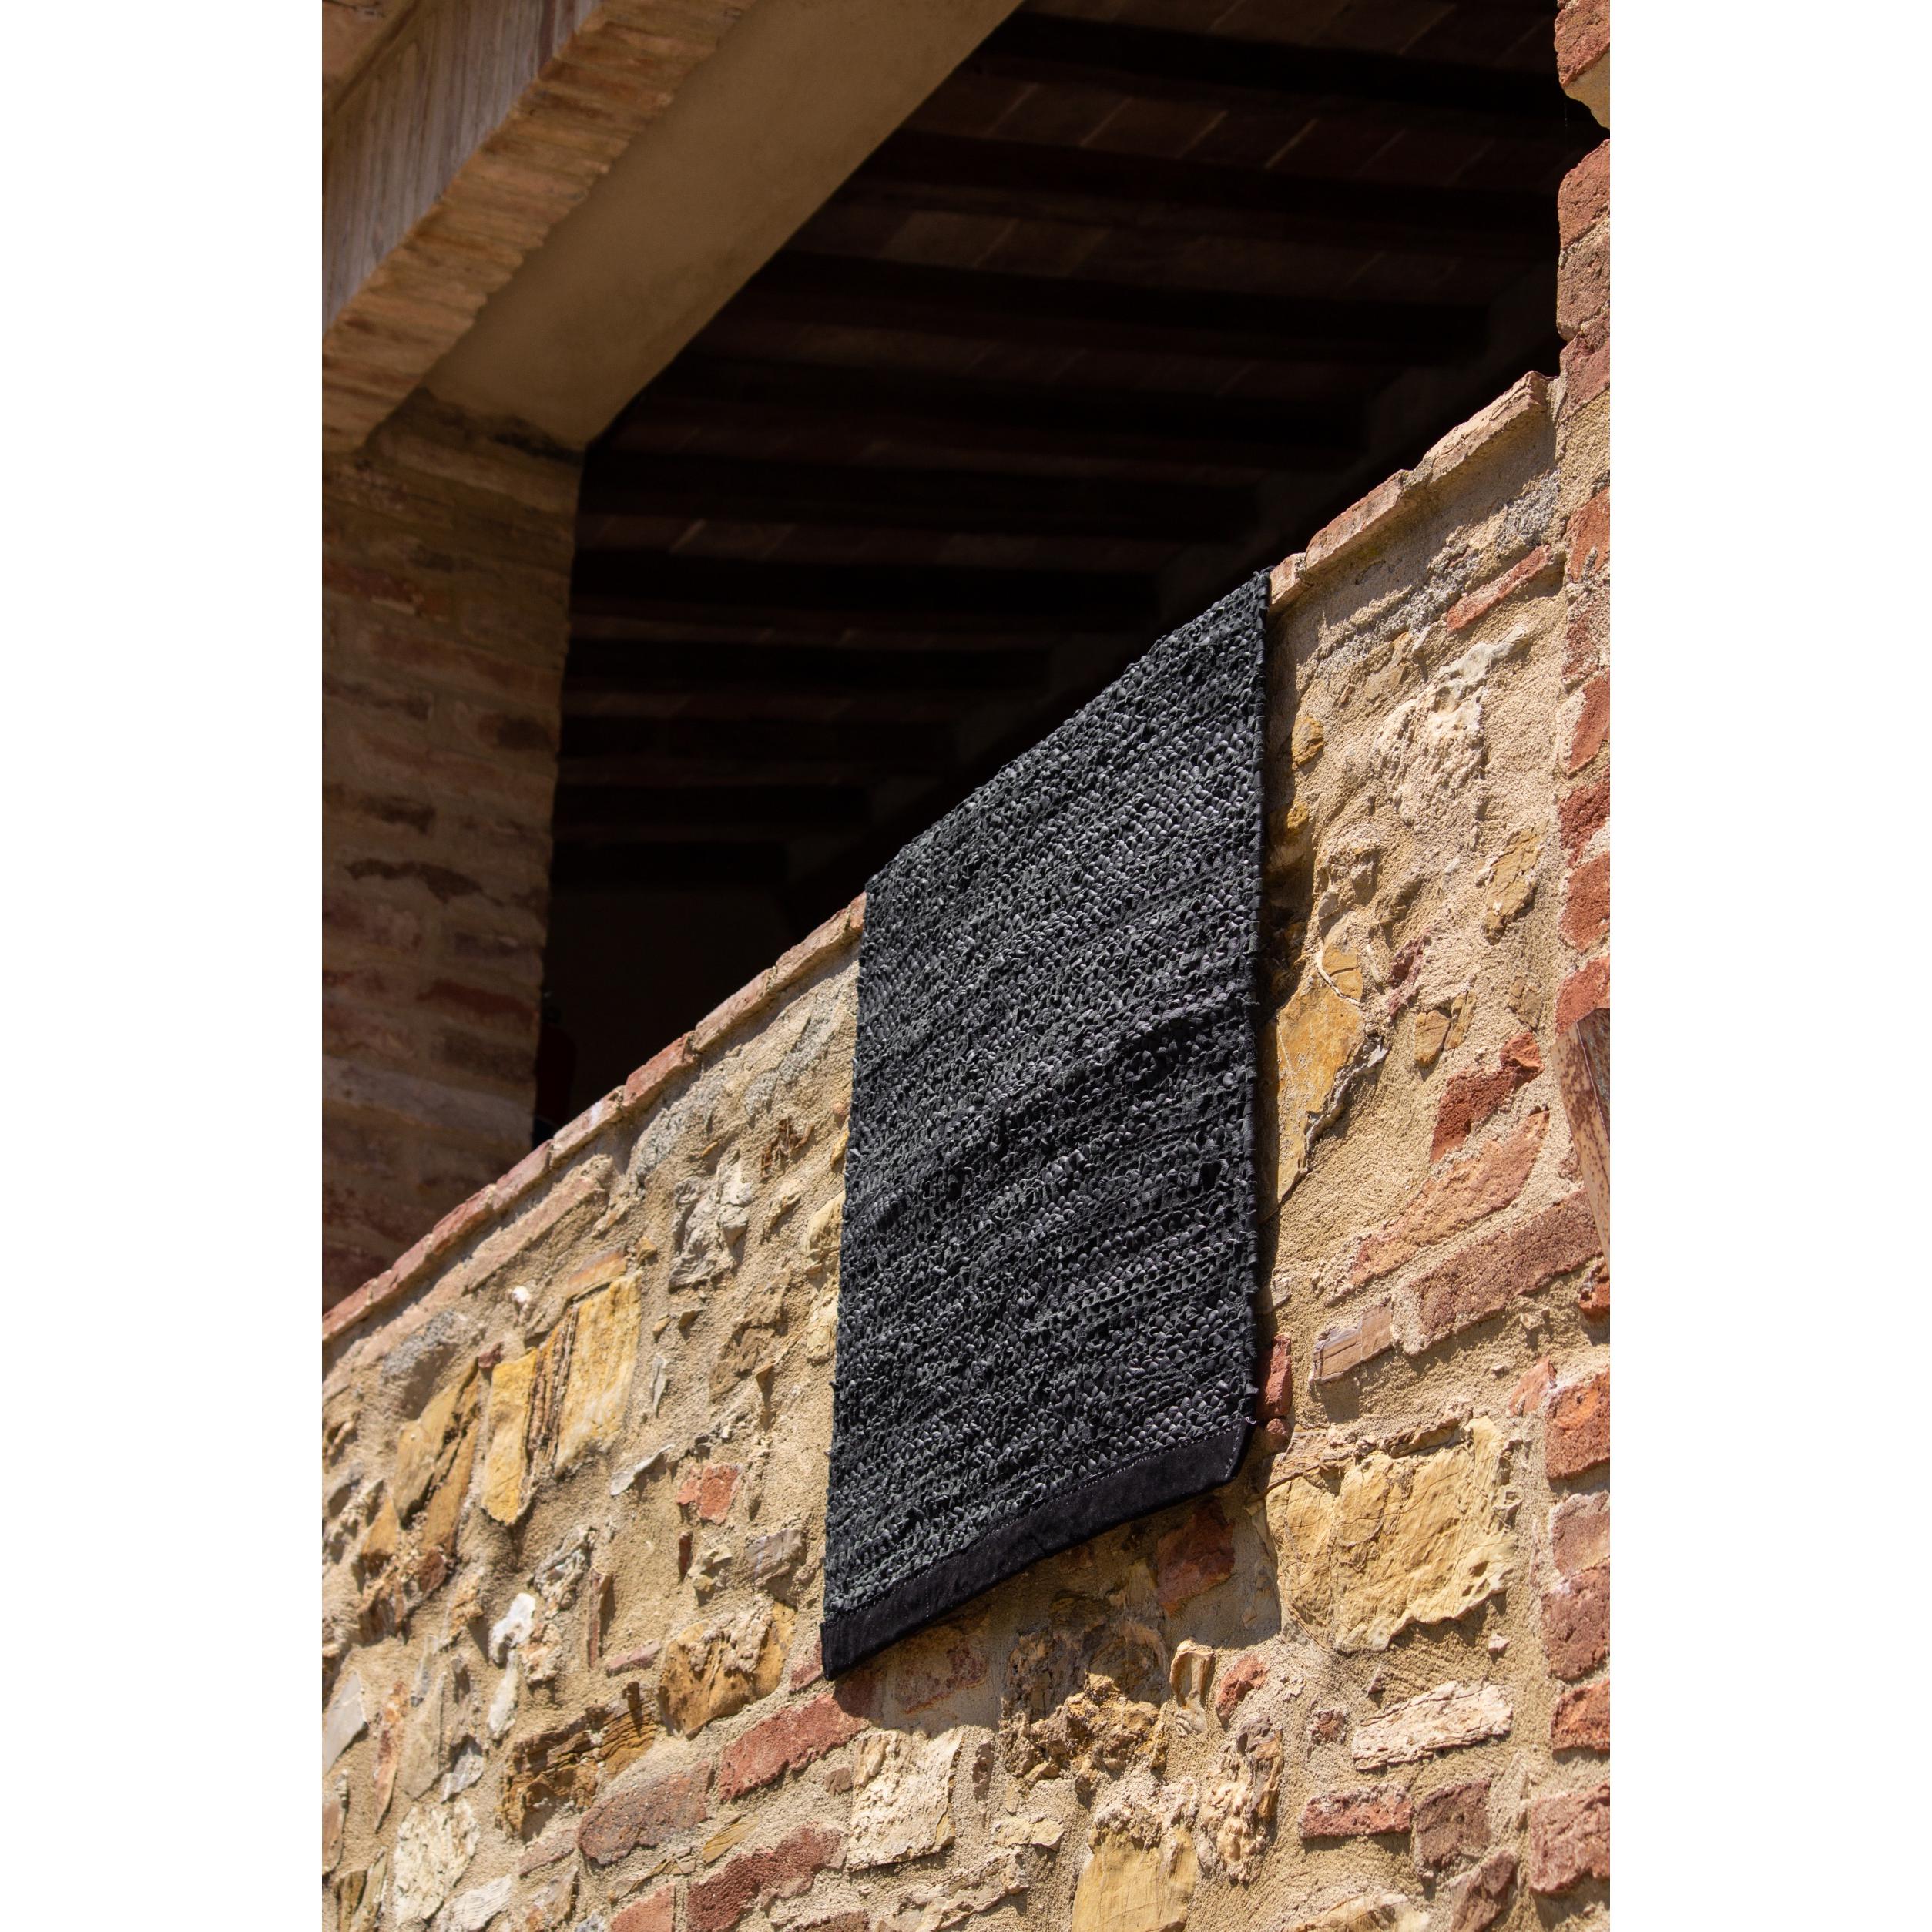 Rug Solid Tapis en cuir noir, 65 x 135 cm